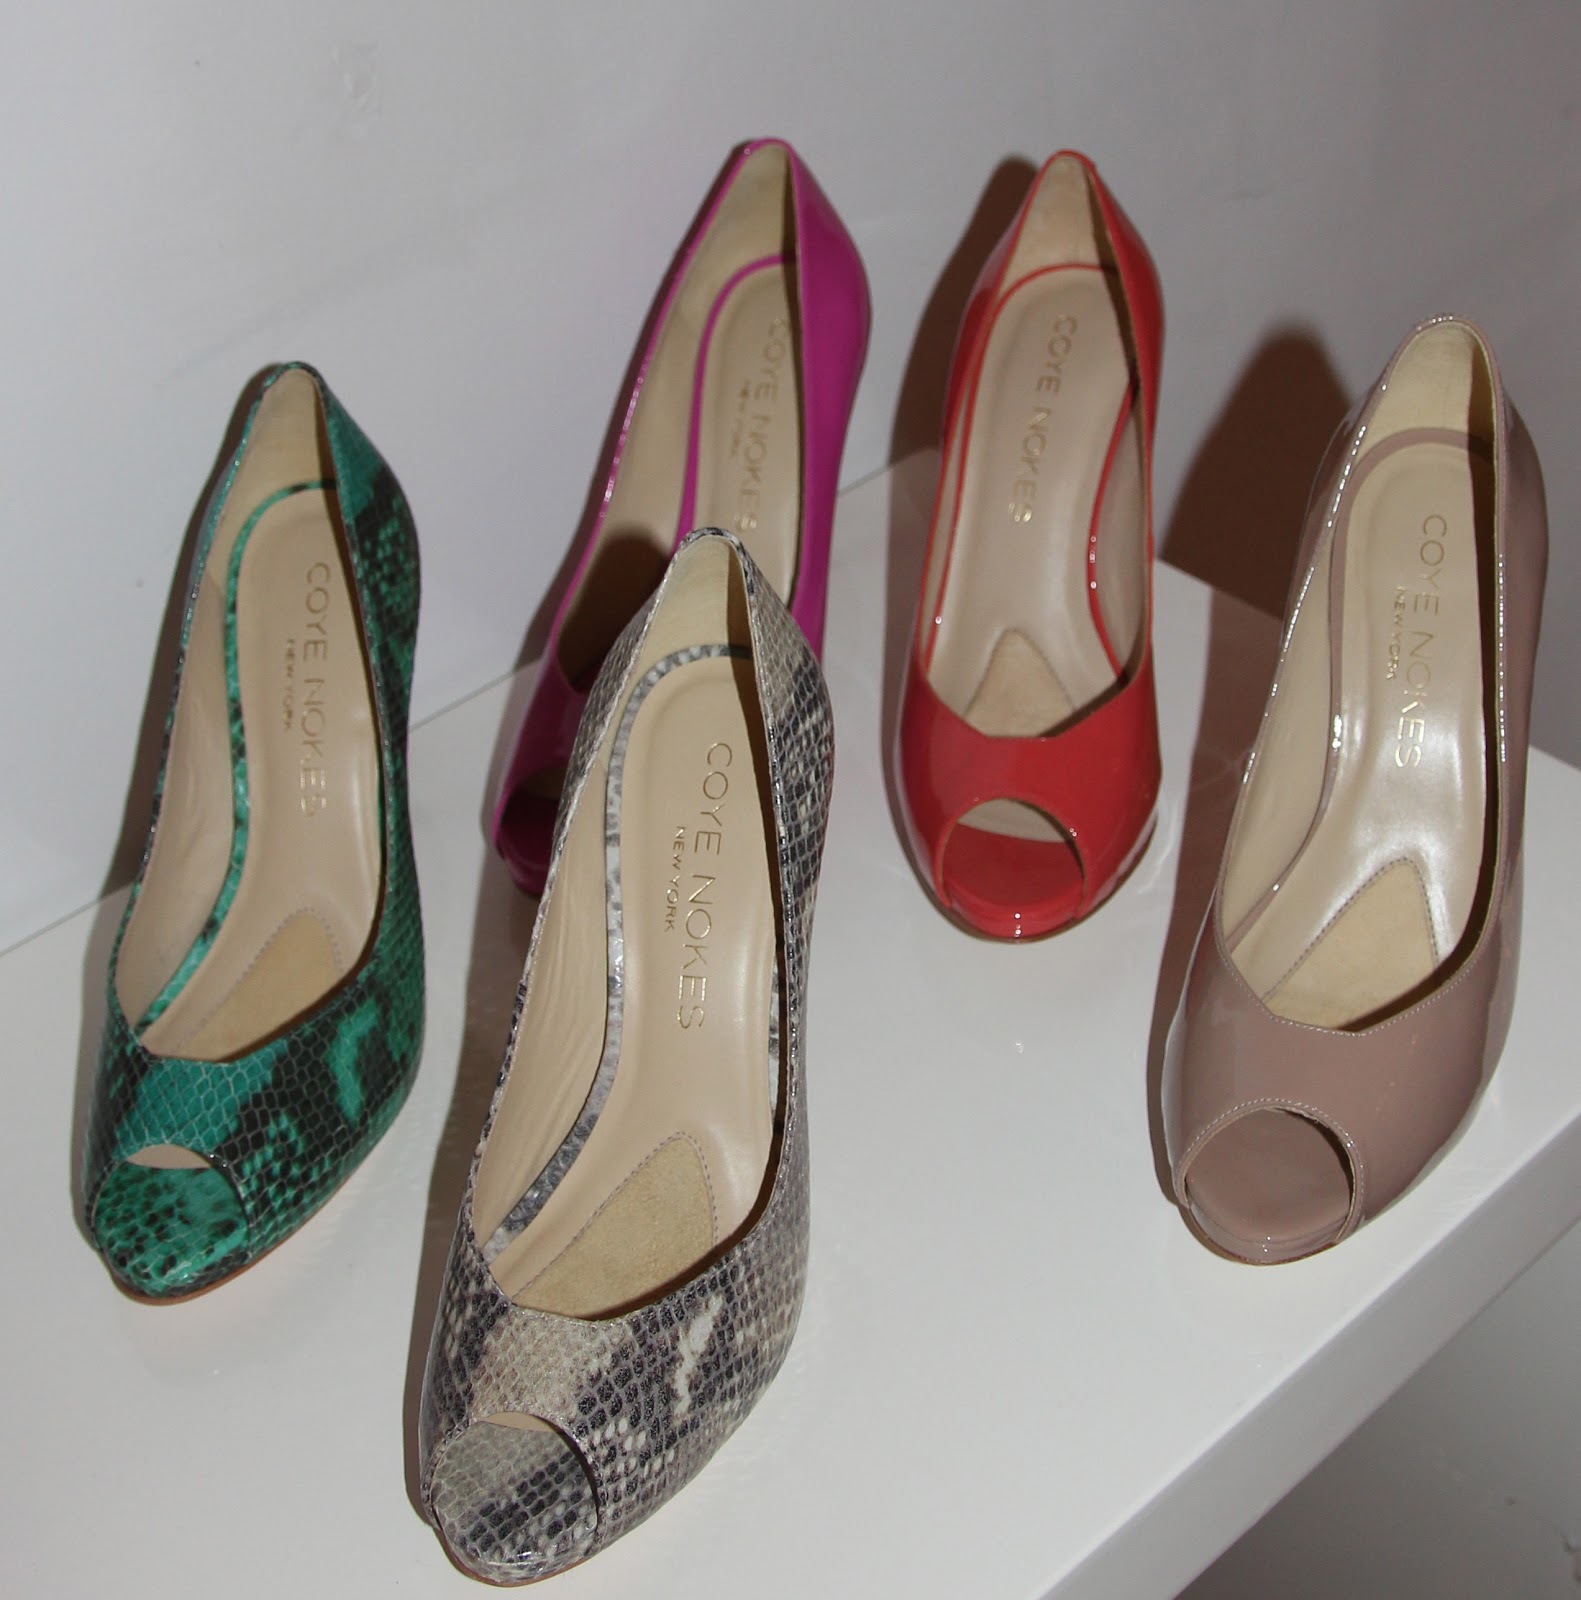 Coye Nokes Luxury Women's Footwear Spring 2013